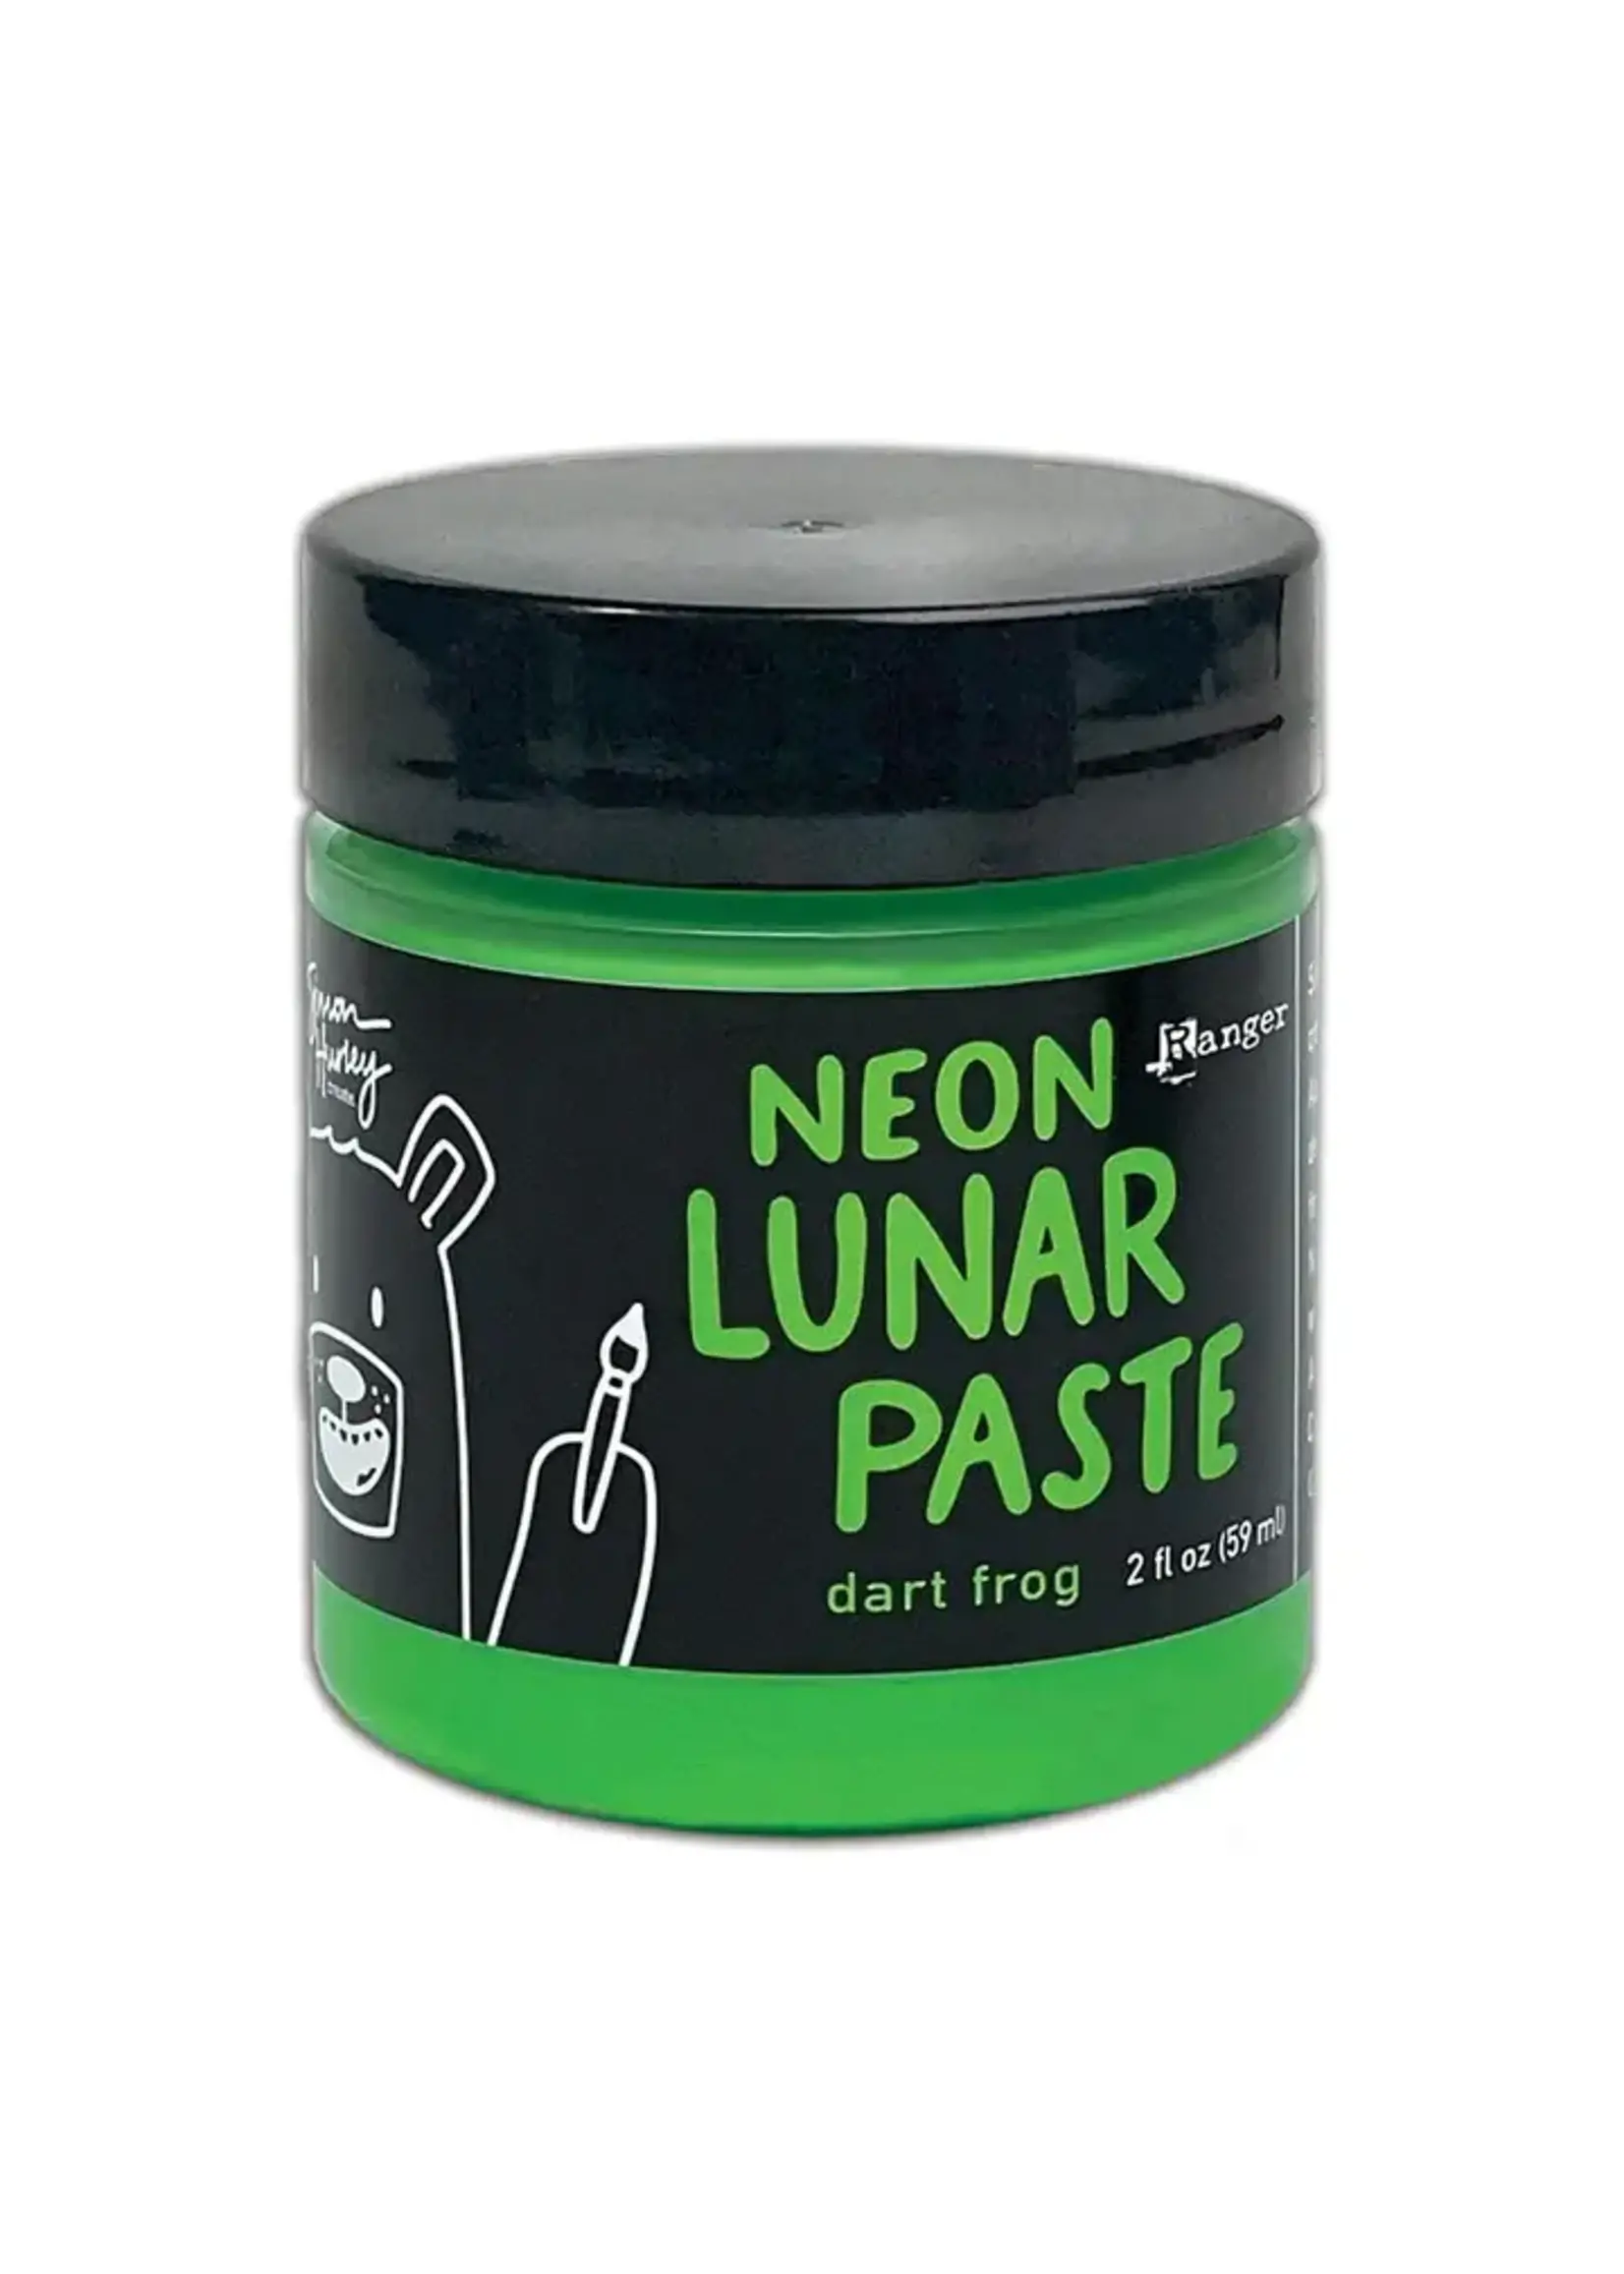 RANGER Simon Hurley Neon Lunar Paste: Dart Frog